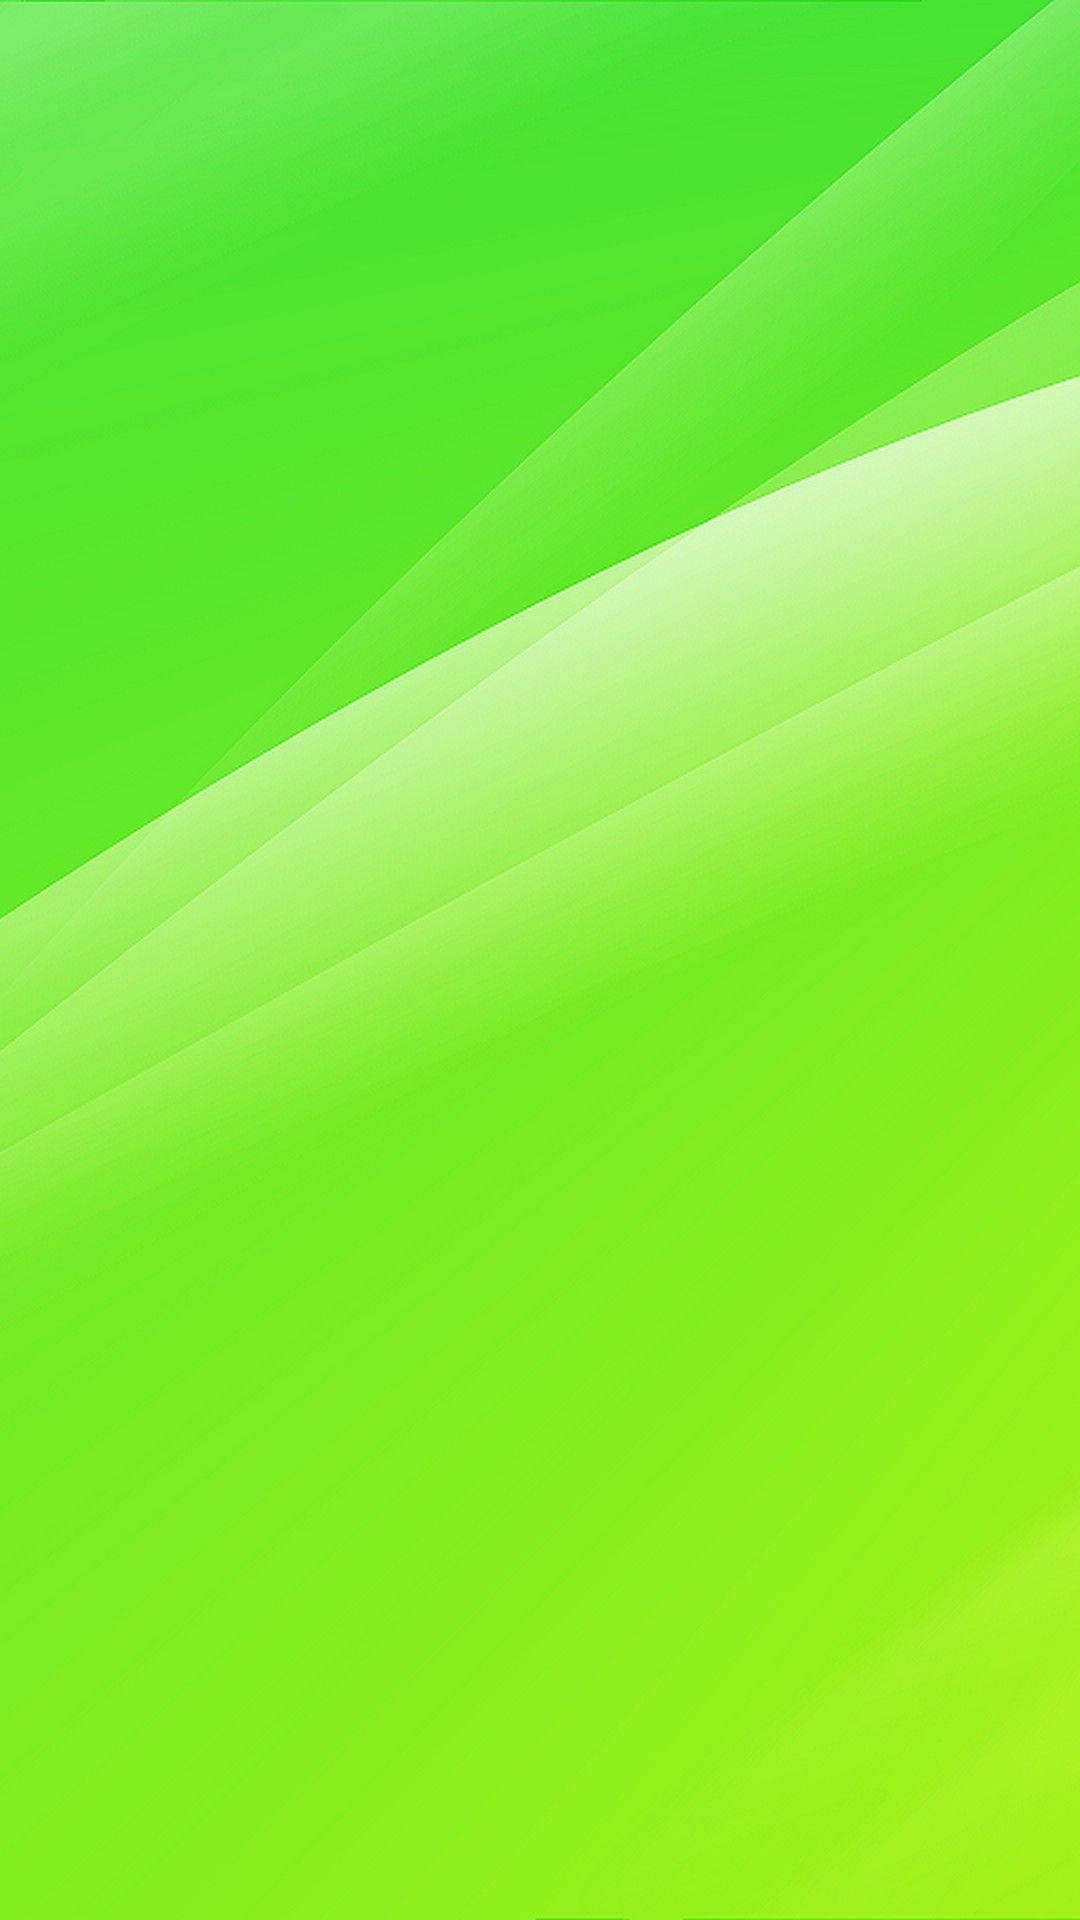 Gleaming Light Green Plain Background